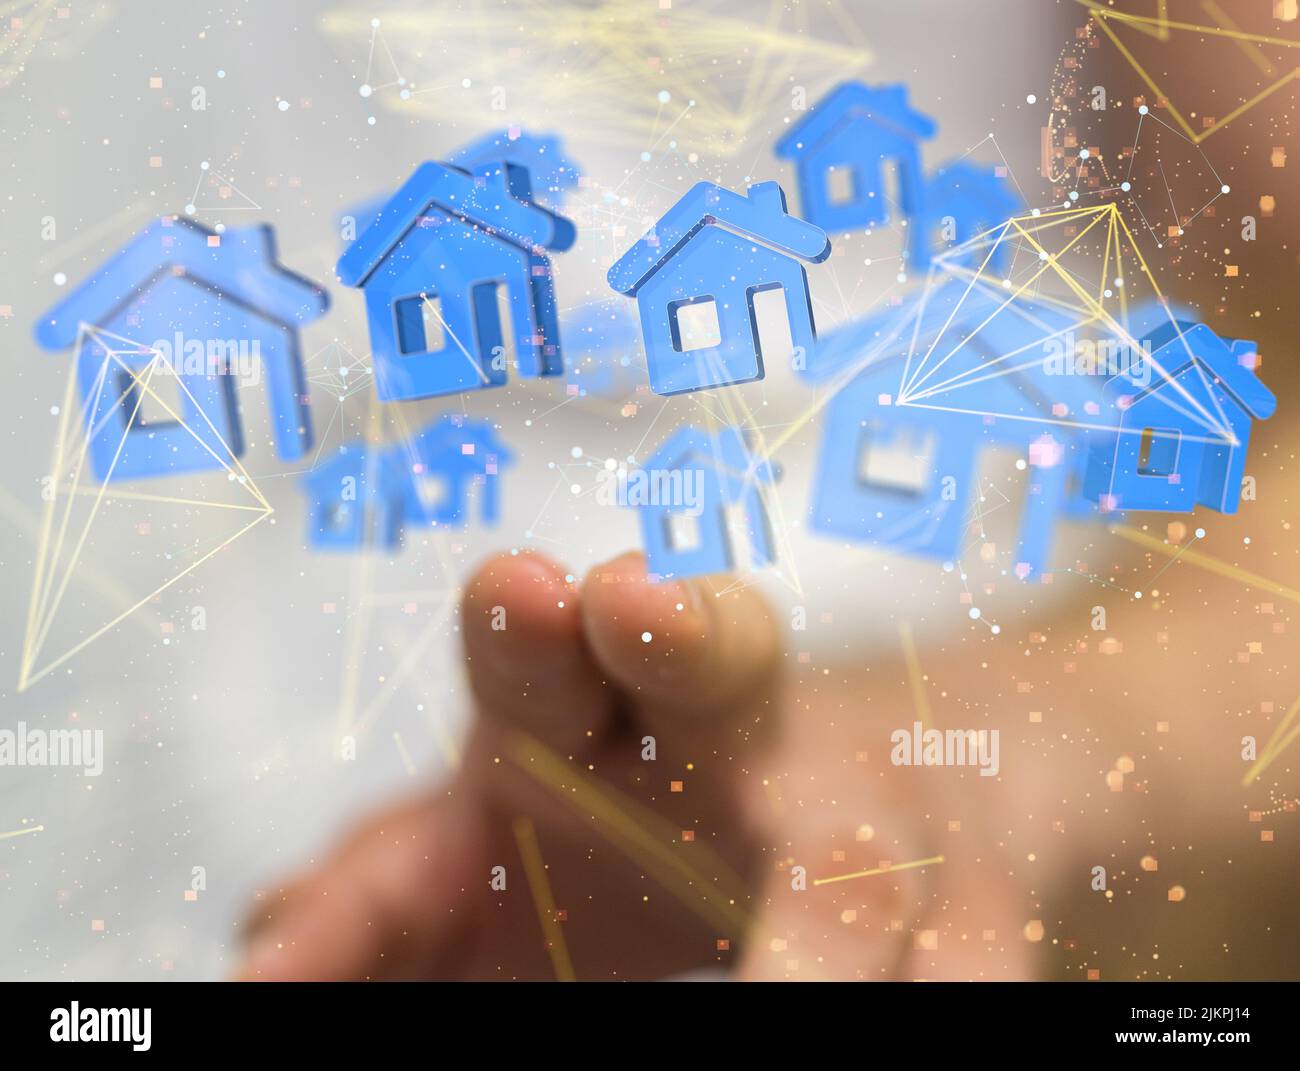 Ein 3D Rendering von Blue Home iot, das mit neuronalen Netzwerken verbunden ist Stockfoto